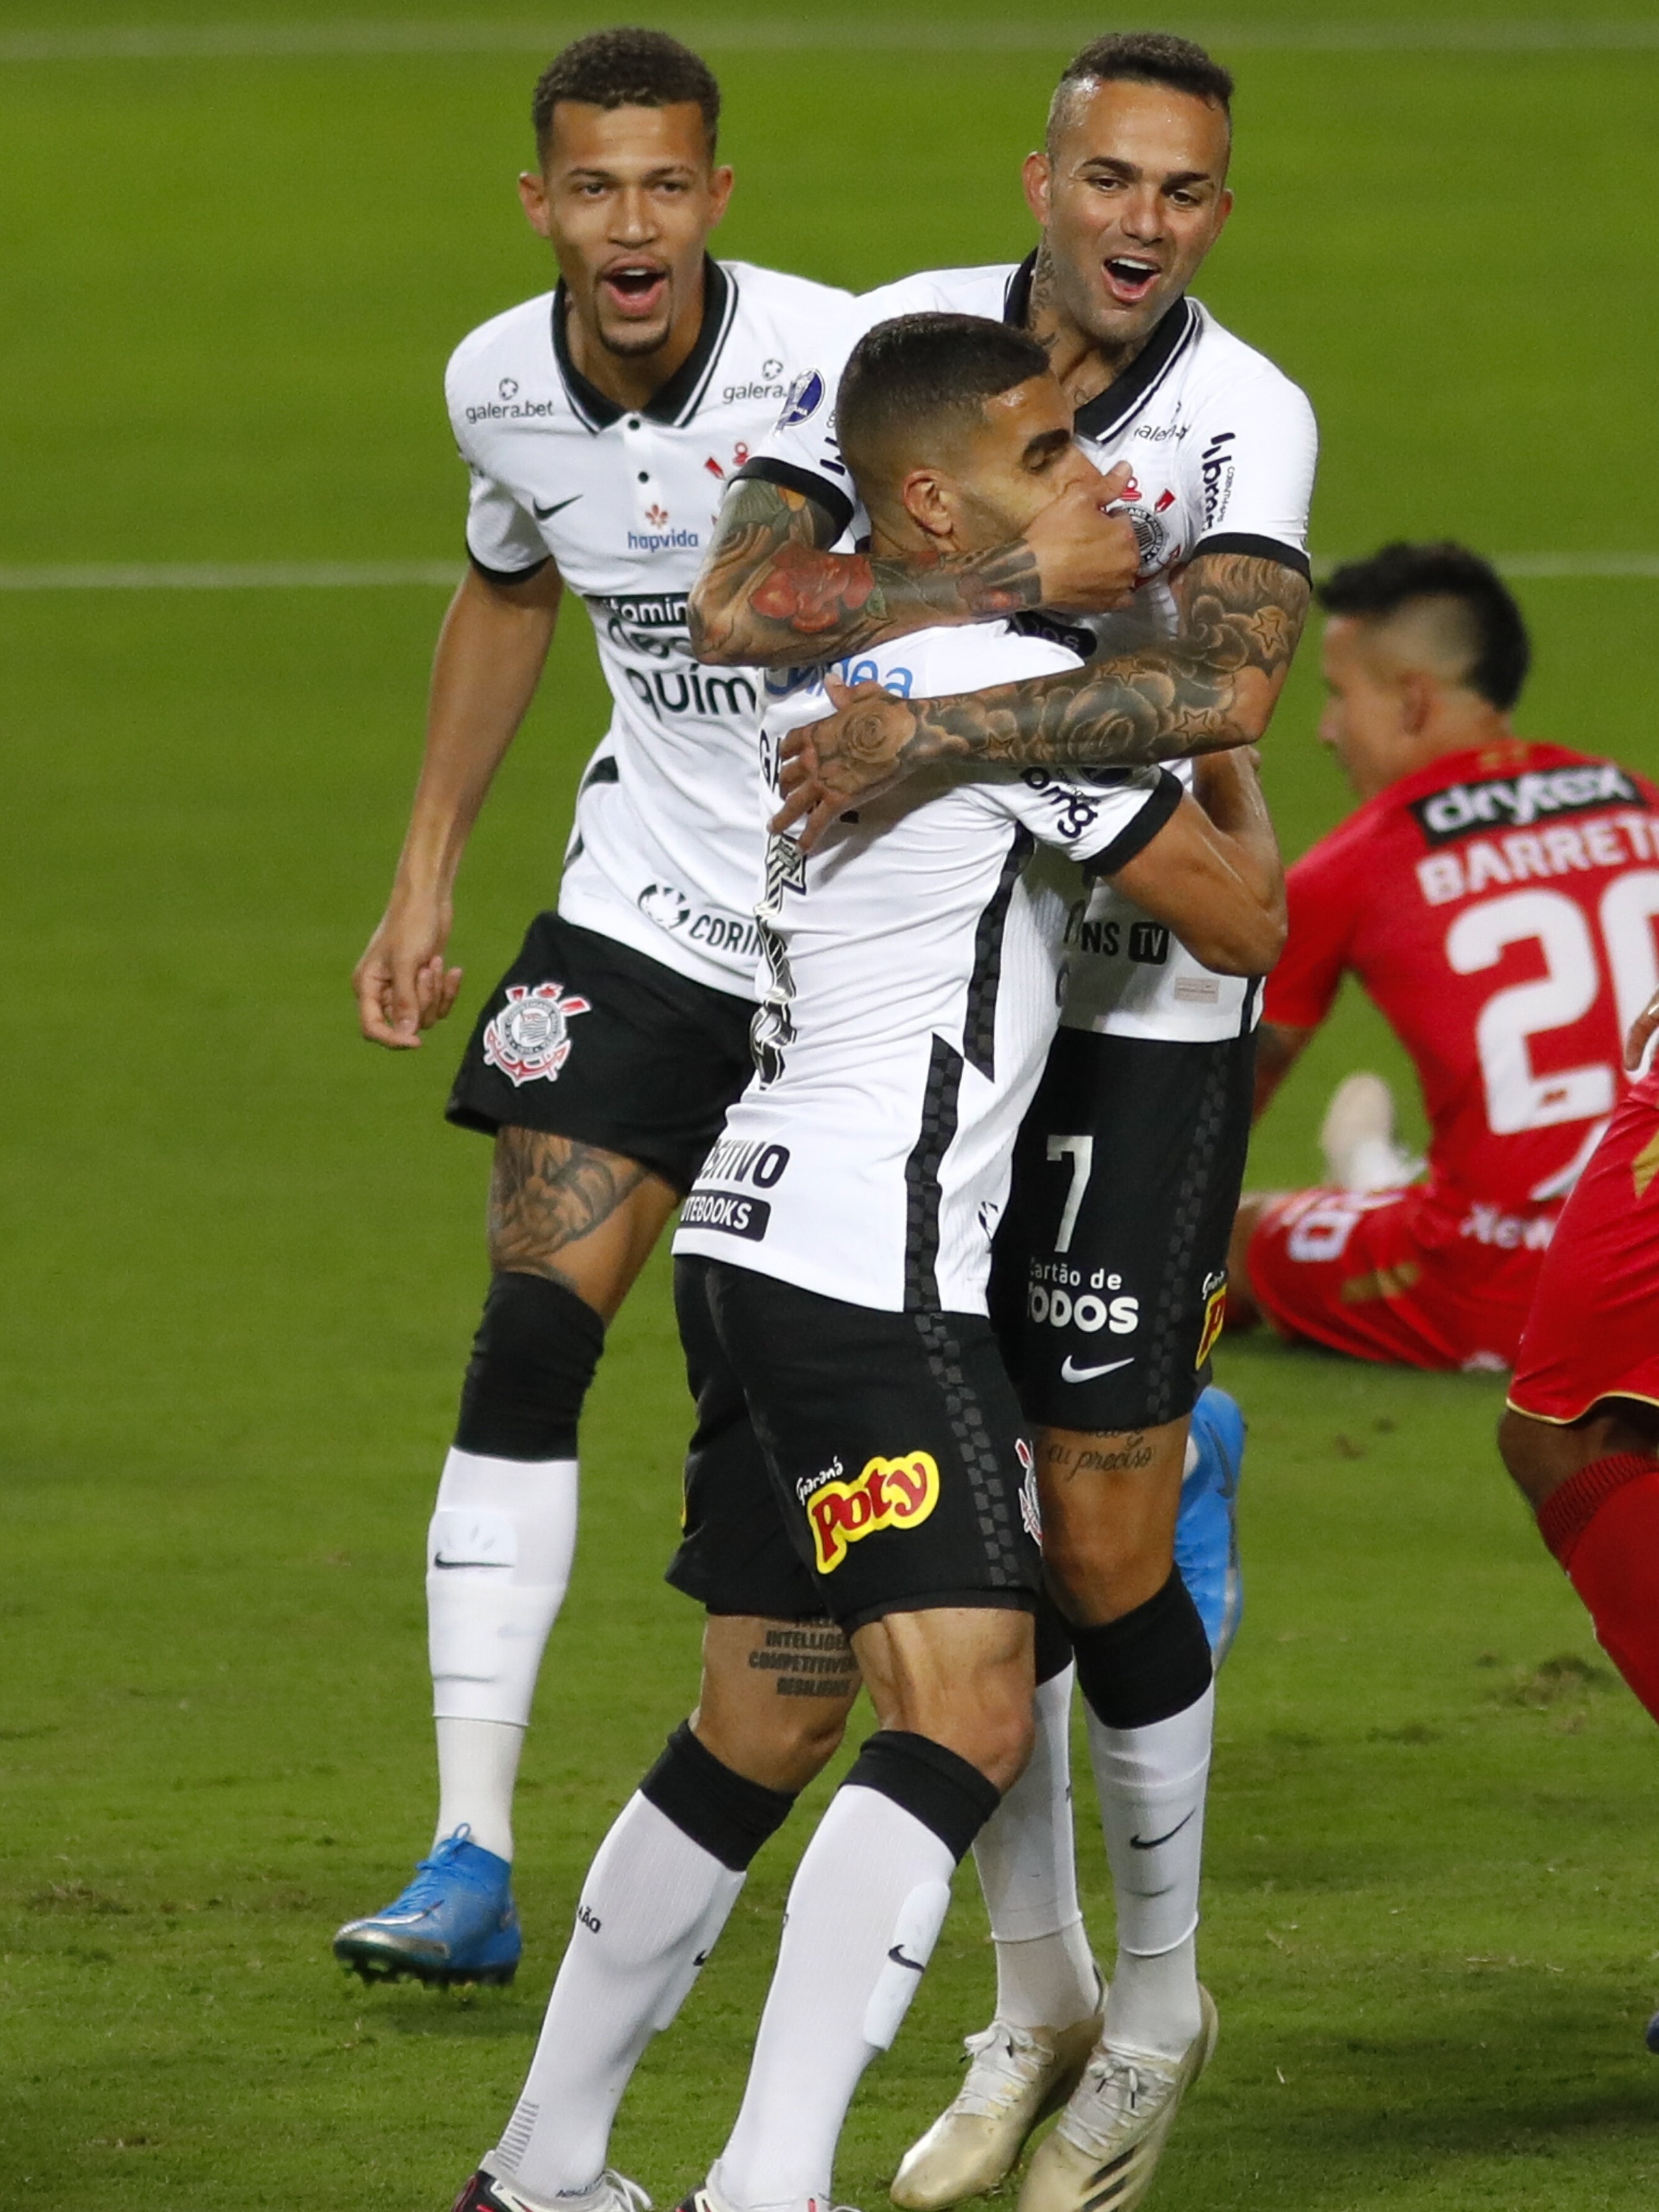 Nenhum time sul-americano ganhou o Mundial depois do Corinthians de 2012 -  07/02/2021 - UOL Esporte